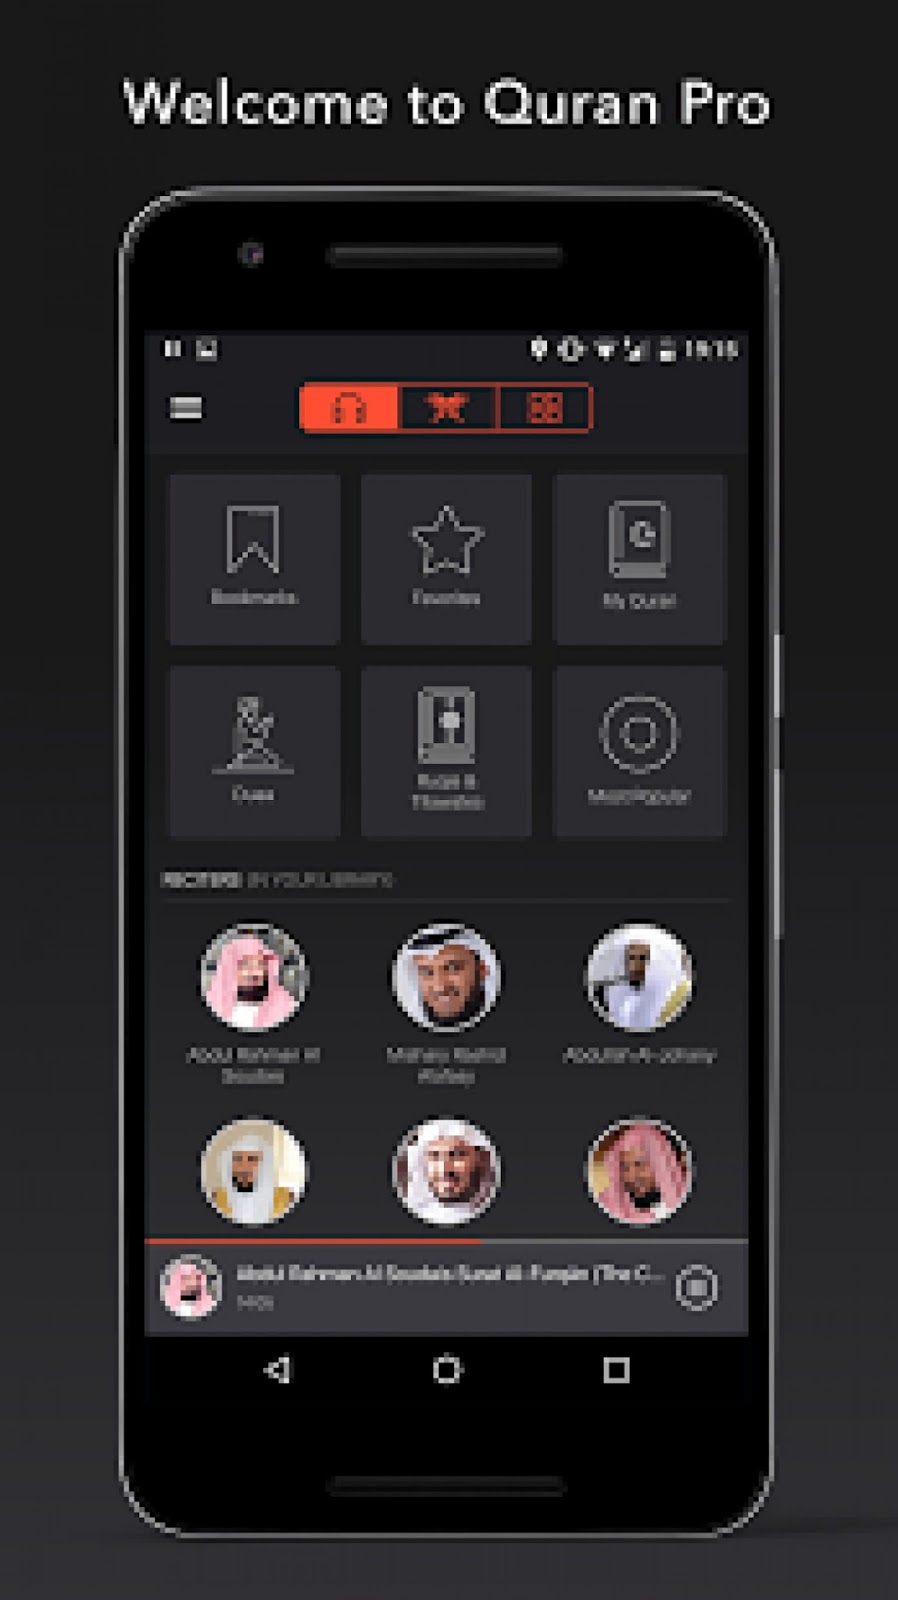  Coran  Pro  Muslim  MP3 Audio hors ligne et Lire Premium v1 